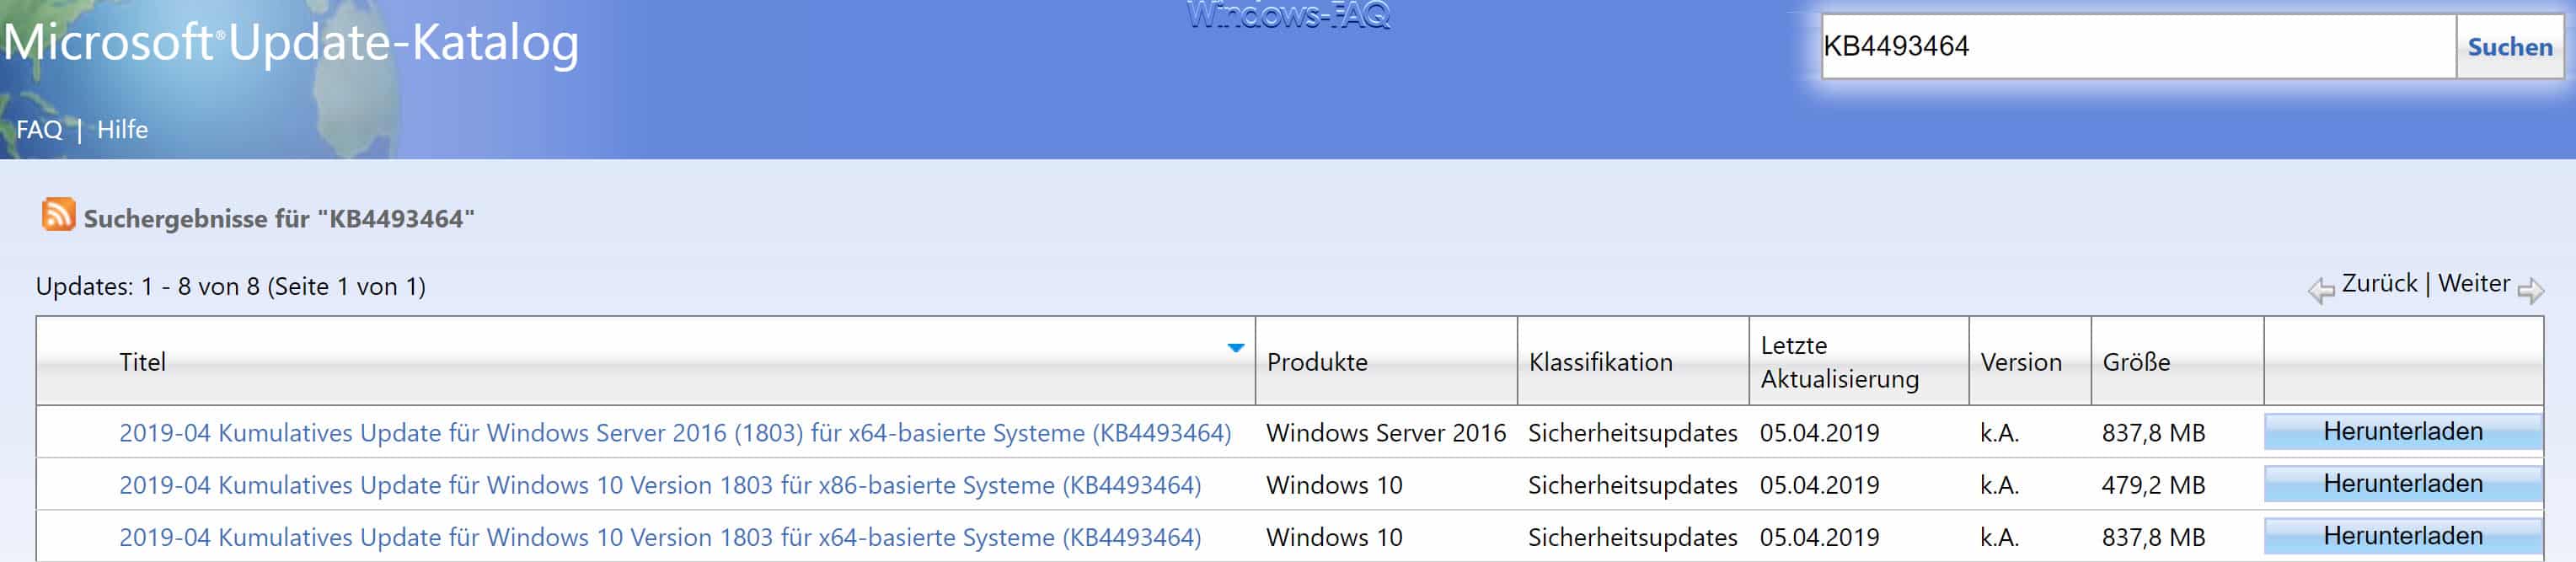 Update KB4493464 für Windows 10 Version 1803 verfügbar (Buildnummer 17134.706)